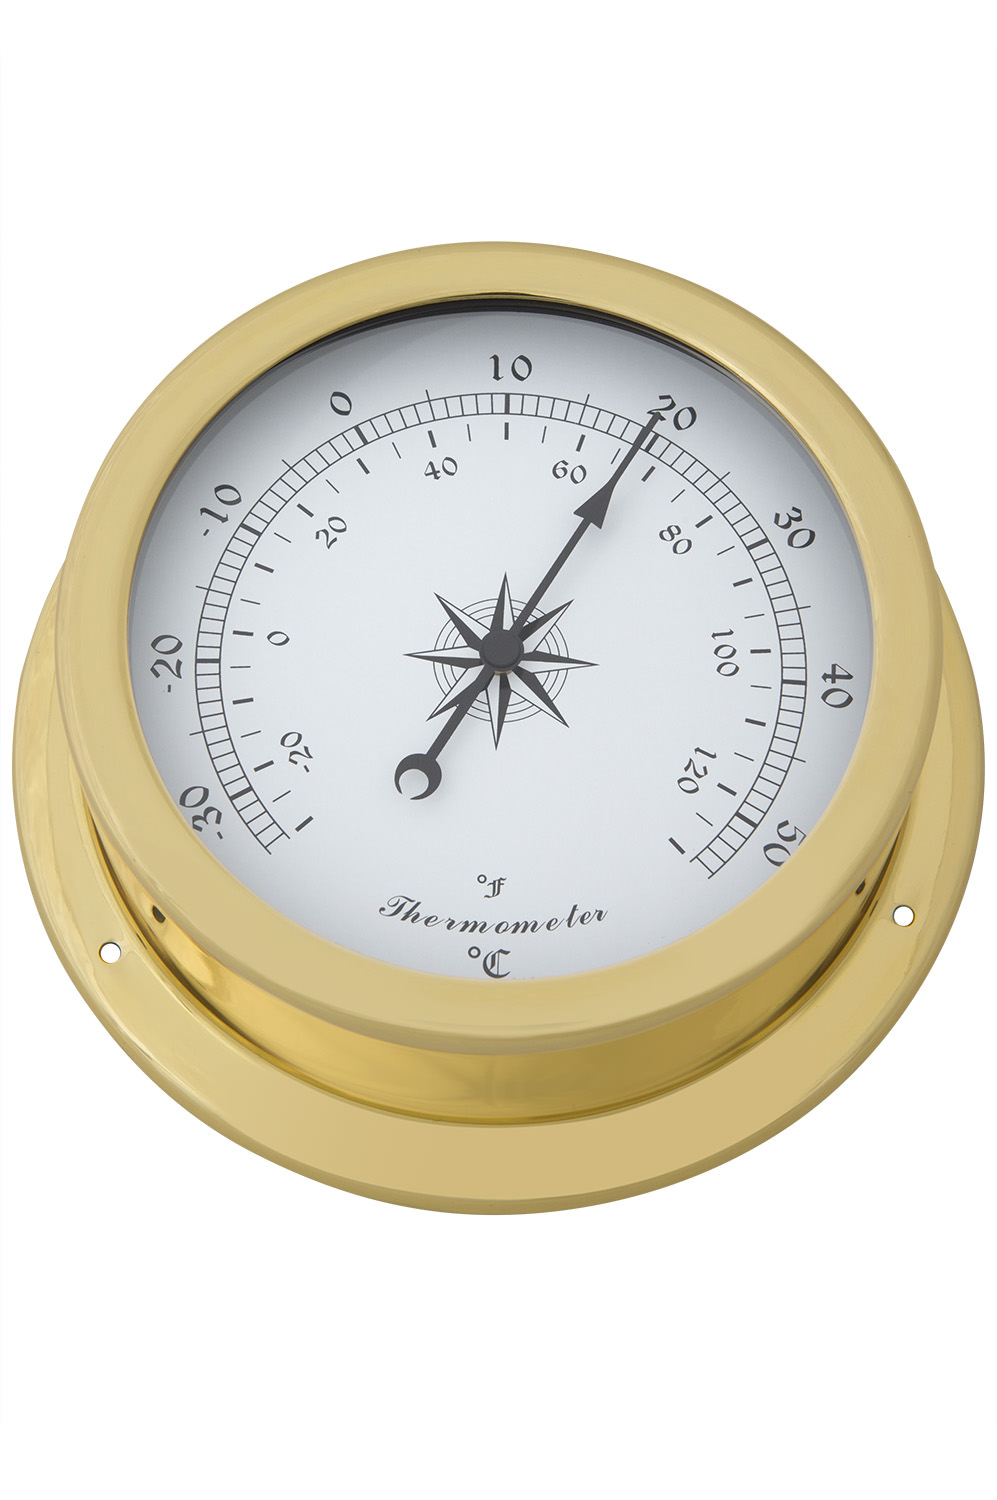 Thermometer Analog Messing rund, Online Shop, Versand aus Berlin